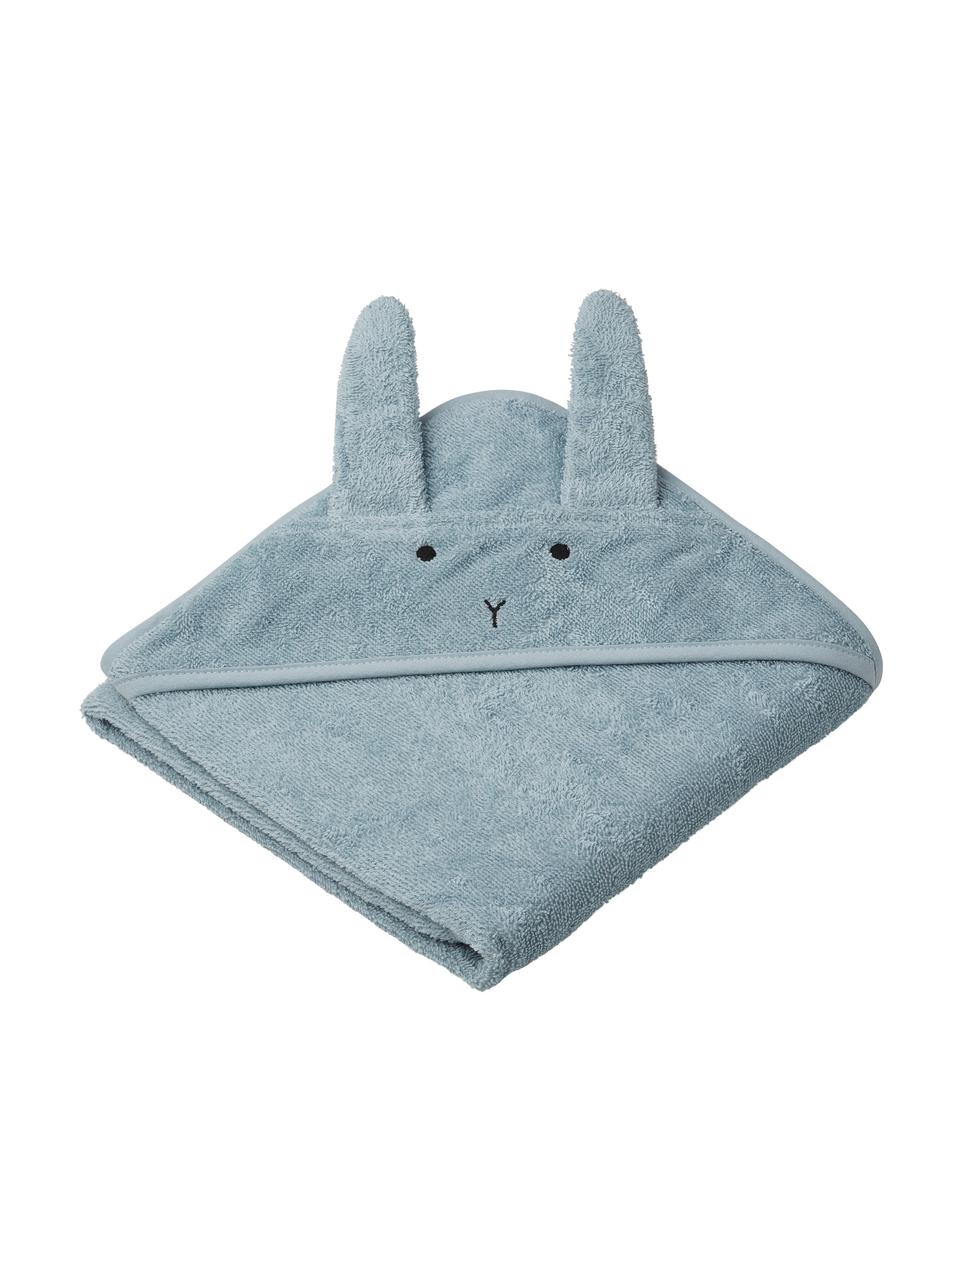 Dětský ručník Albert Rabbit, 100% bio bavlna (bavlněné froté), Modrá, Š 70 cm, D 70 cm